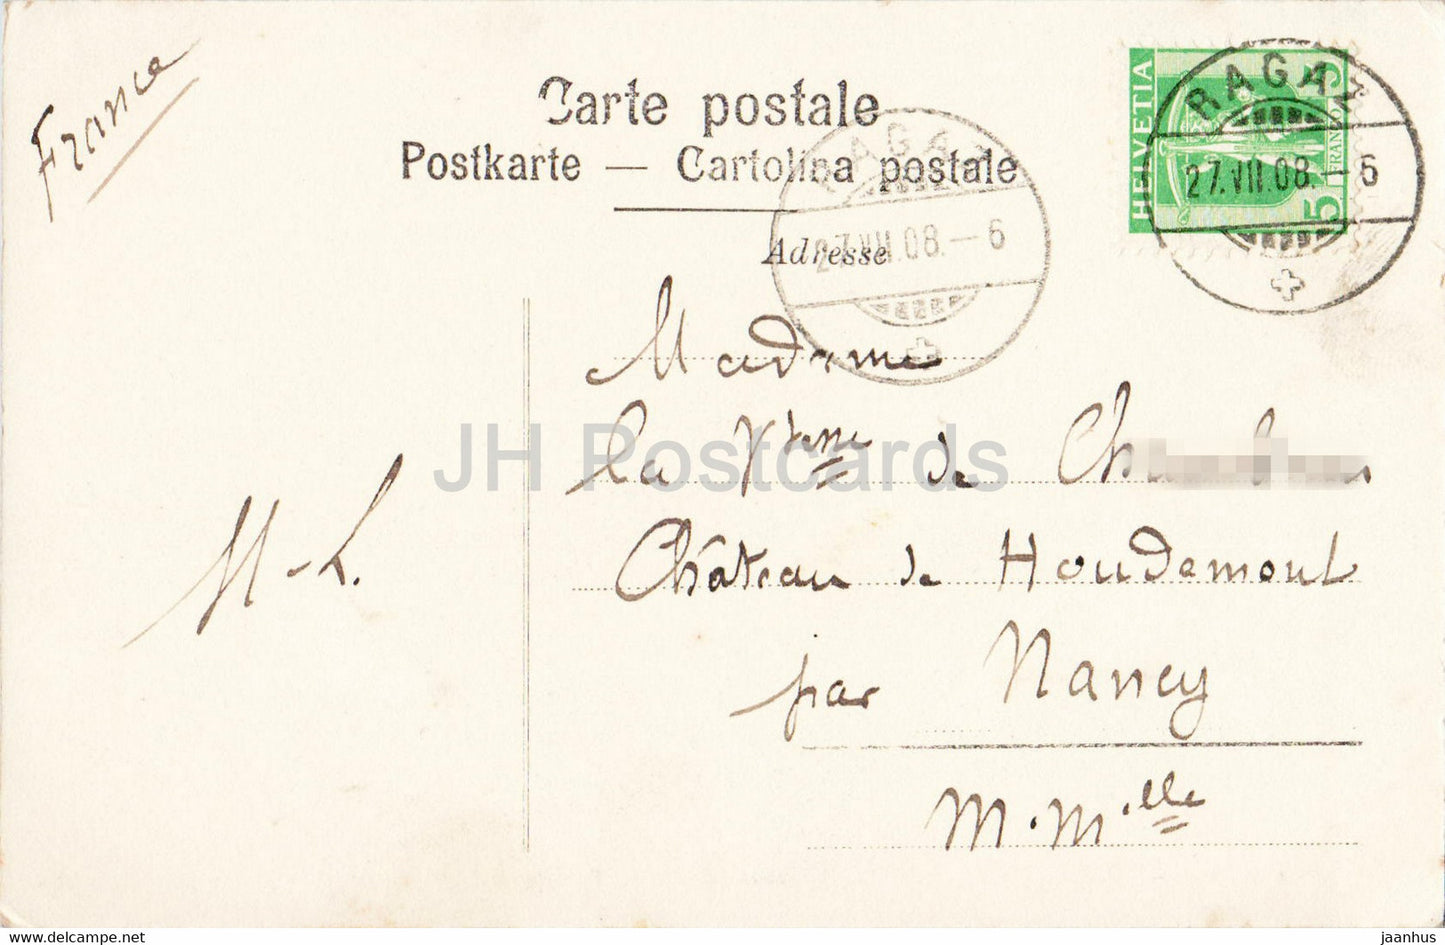 Ragaz - Ruine und Hotel Wartenstein - 6524 - alte Postkarte - 1908 - Schweiz - gebraucht